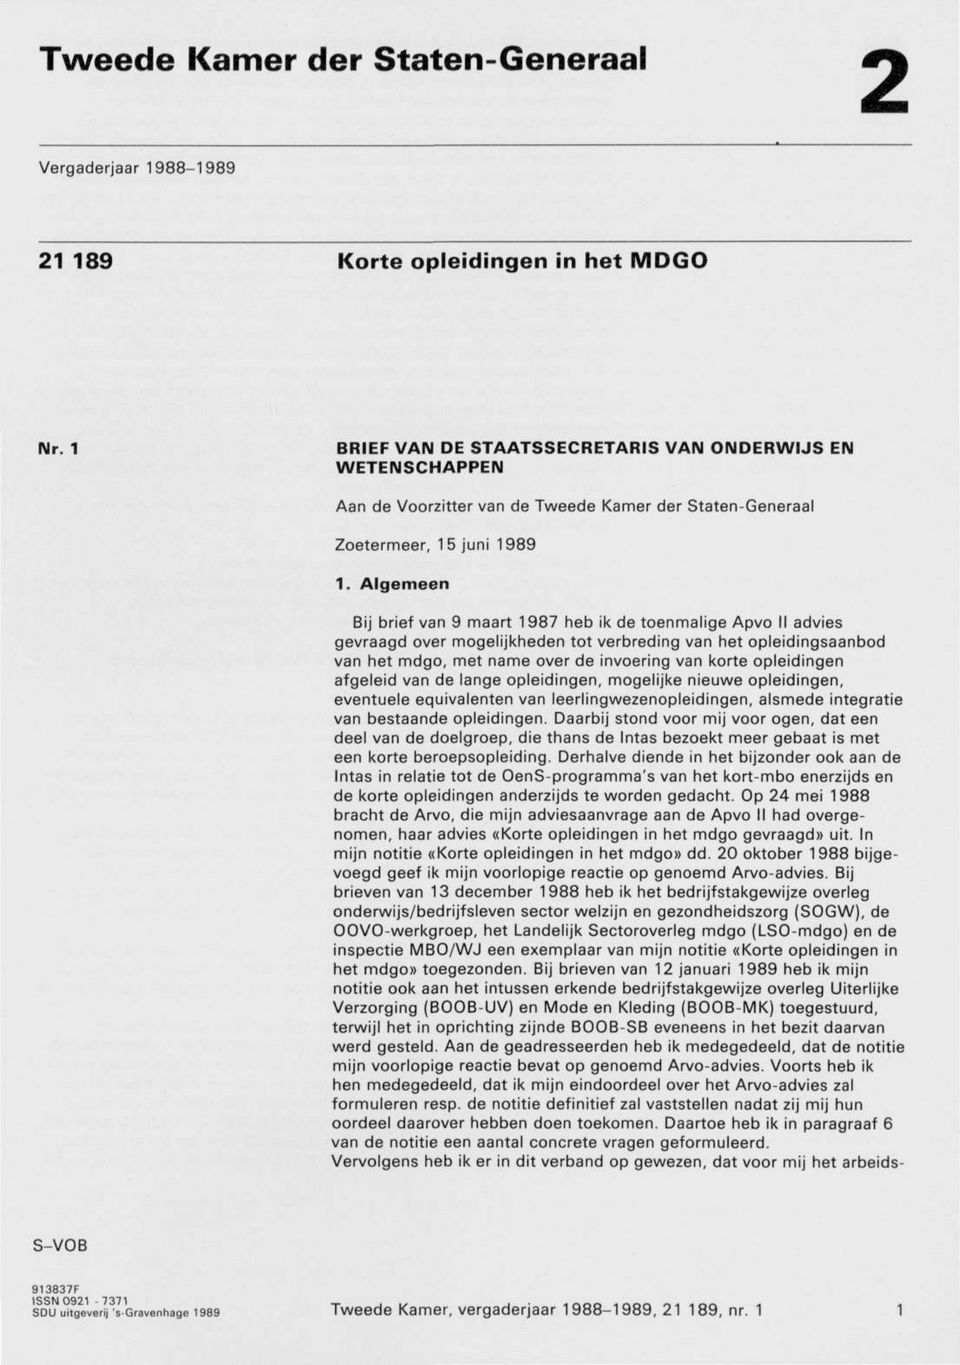 Algemeen Bij brief van 9 maart 1987 heb ik de toenmalige Apvo II advies gevraagd over mogelijkheden tot verbreding van het opleidingsaanbod van het mdgo, met name over de invoering van korte